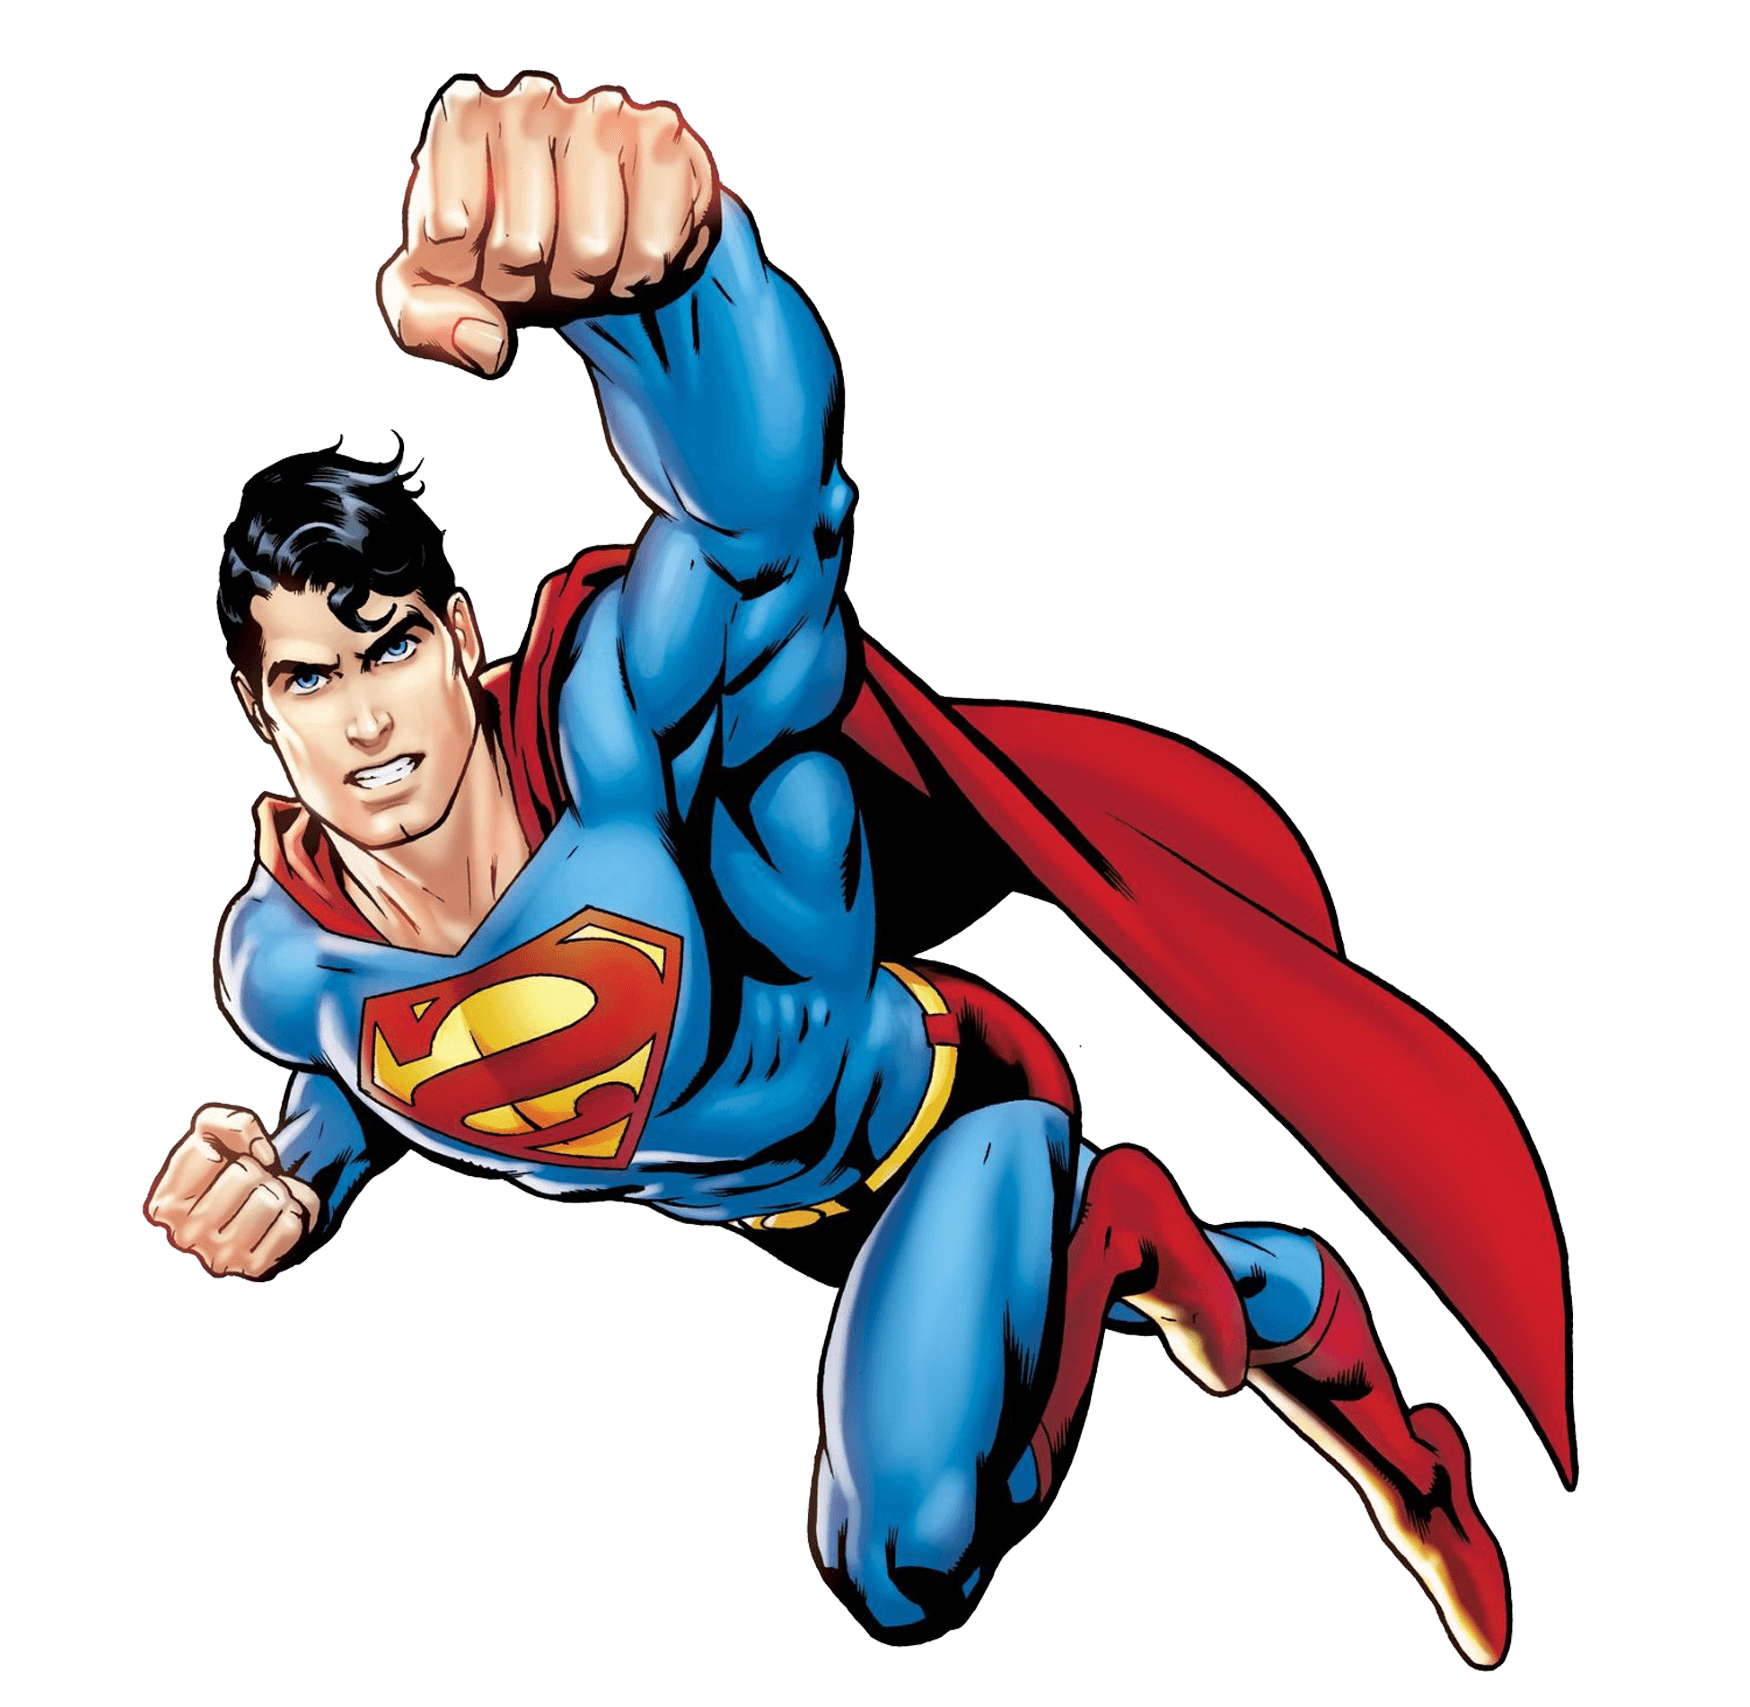 Imagem transparente do superman dos desenhos animados